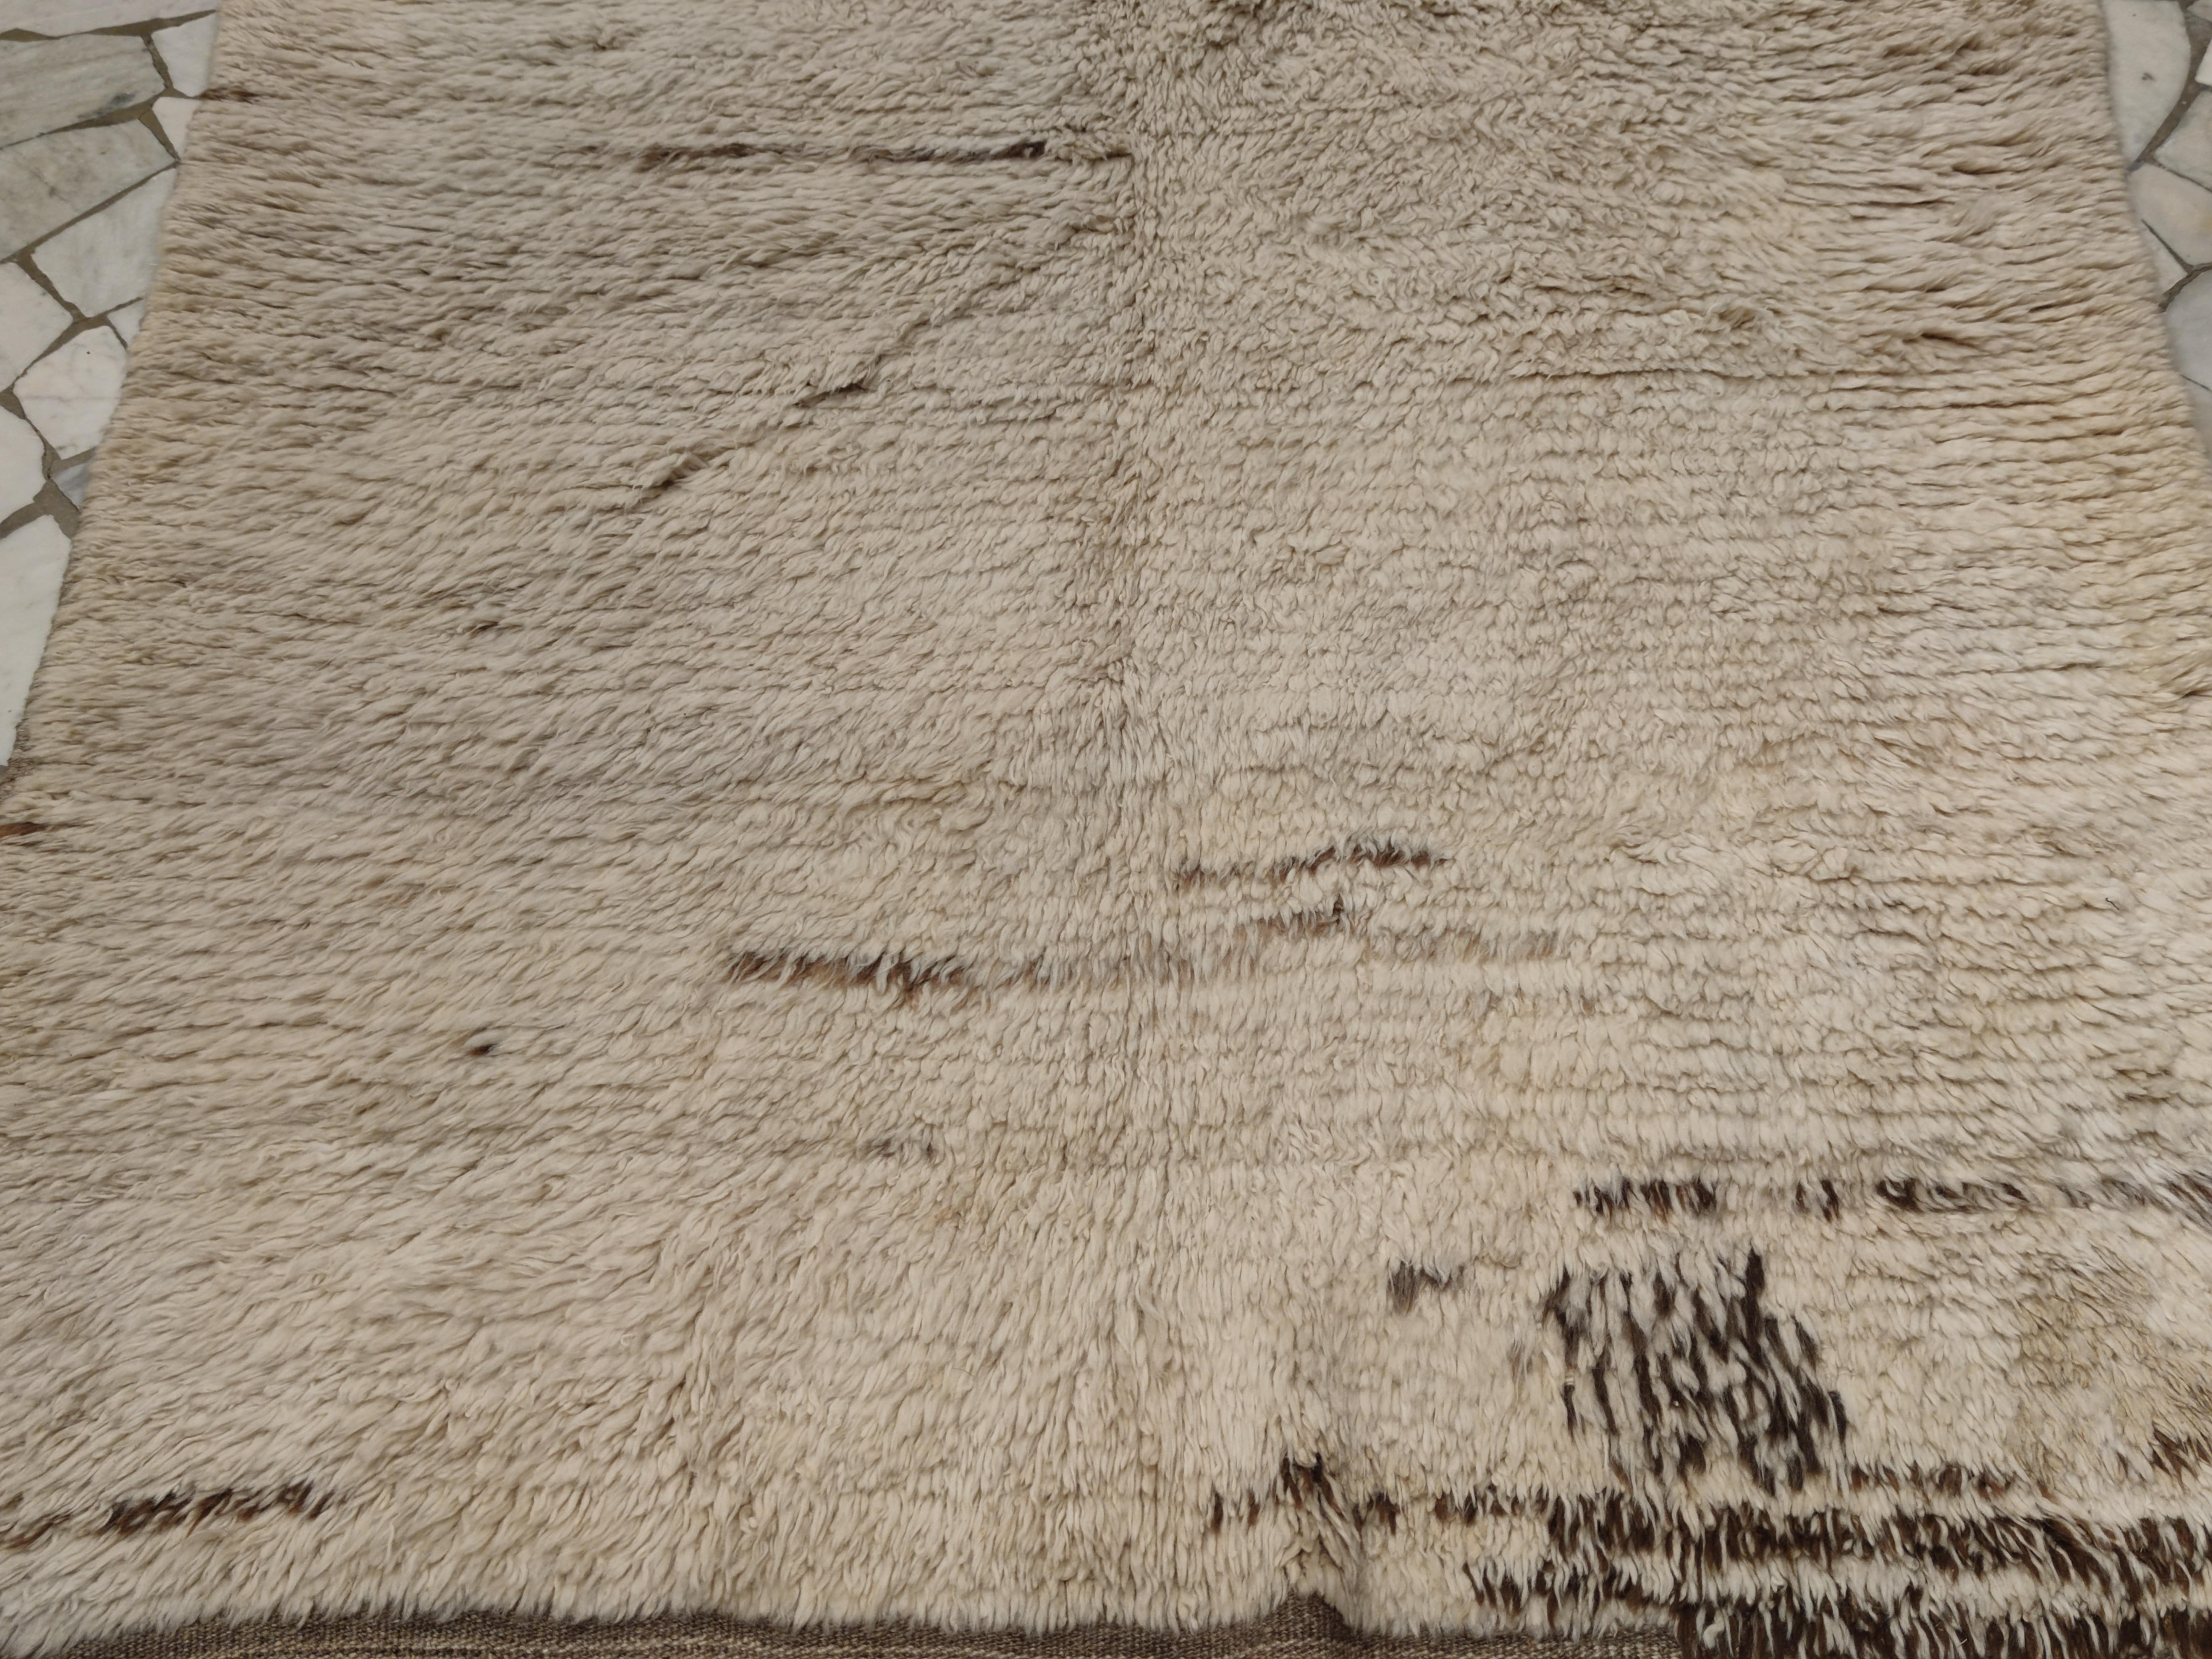 Un exemple rare et relativement précoce de tapis Tulu monochrome, qui se distingue par un champ complètement ouvert embelli par des touches presque calligraphiques de laine brune naturelle. Les tulus de ce type sont parmi les plus anciens qui